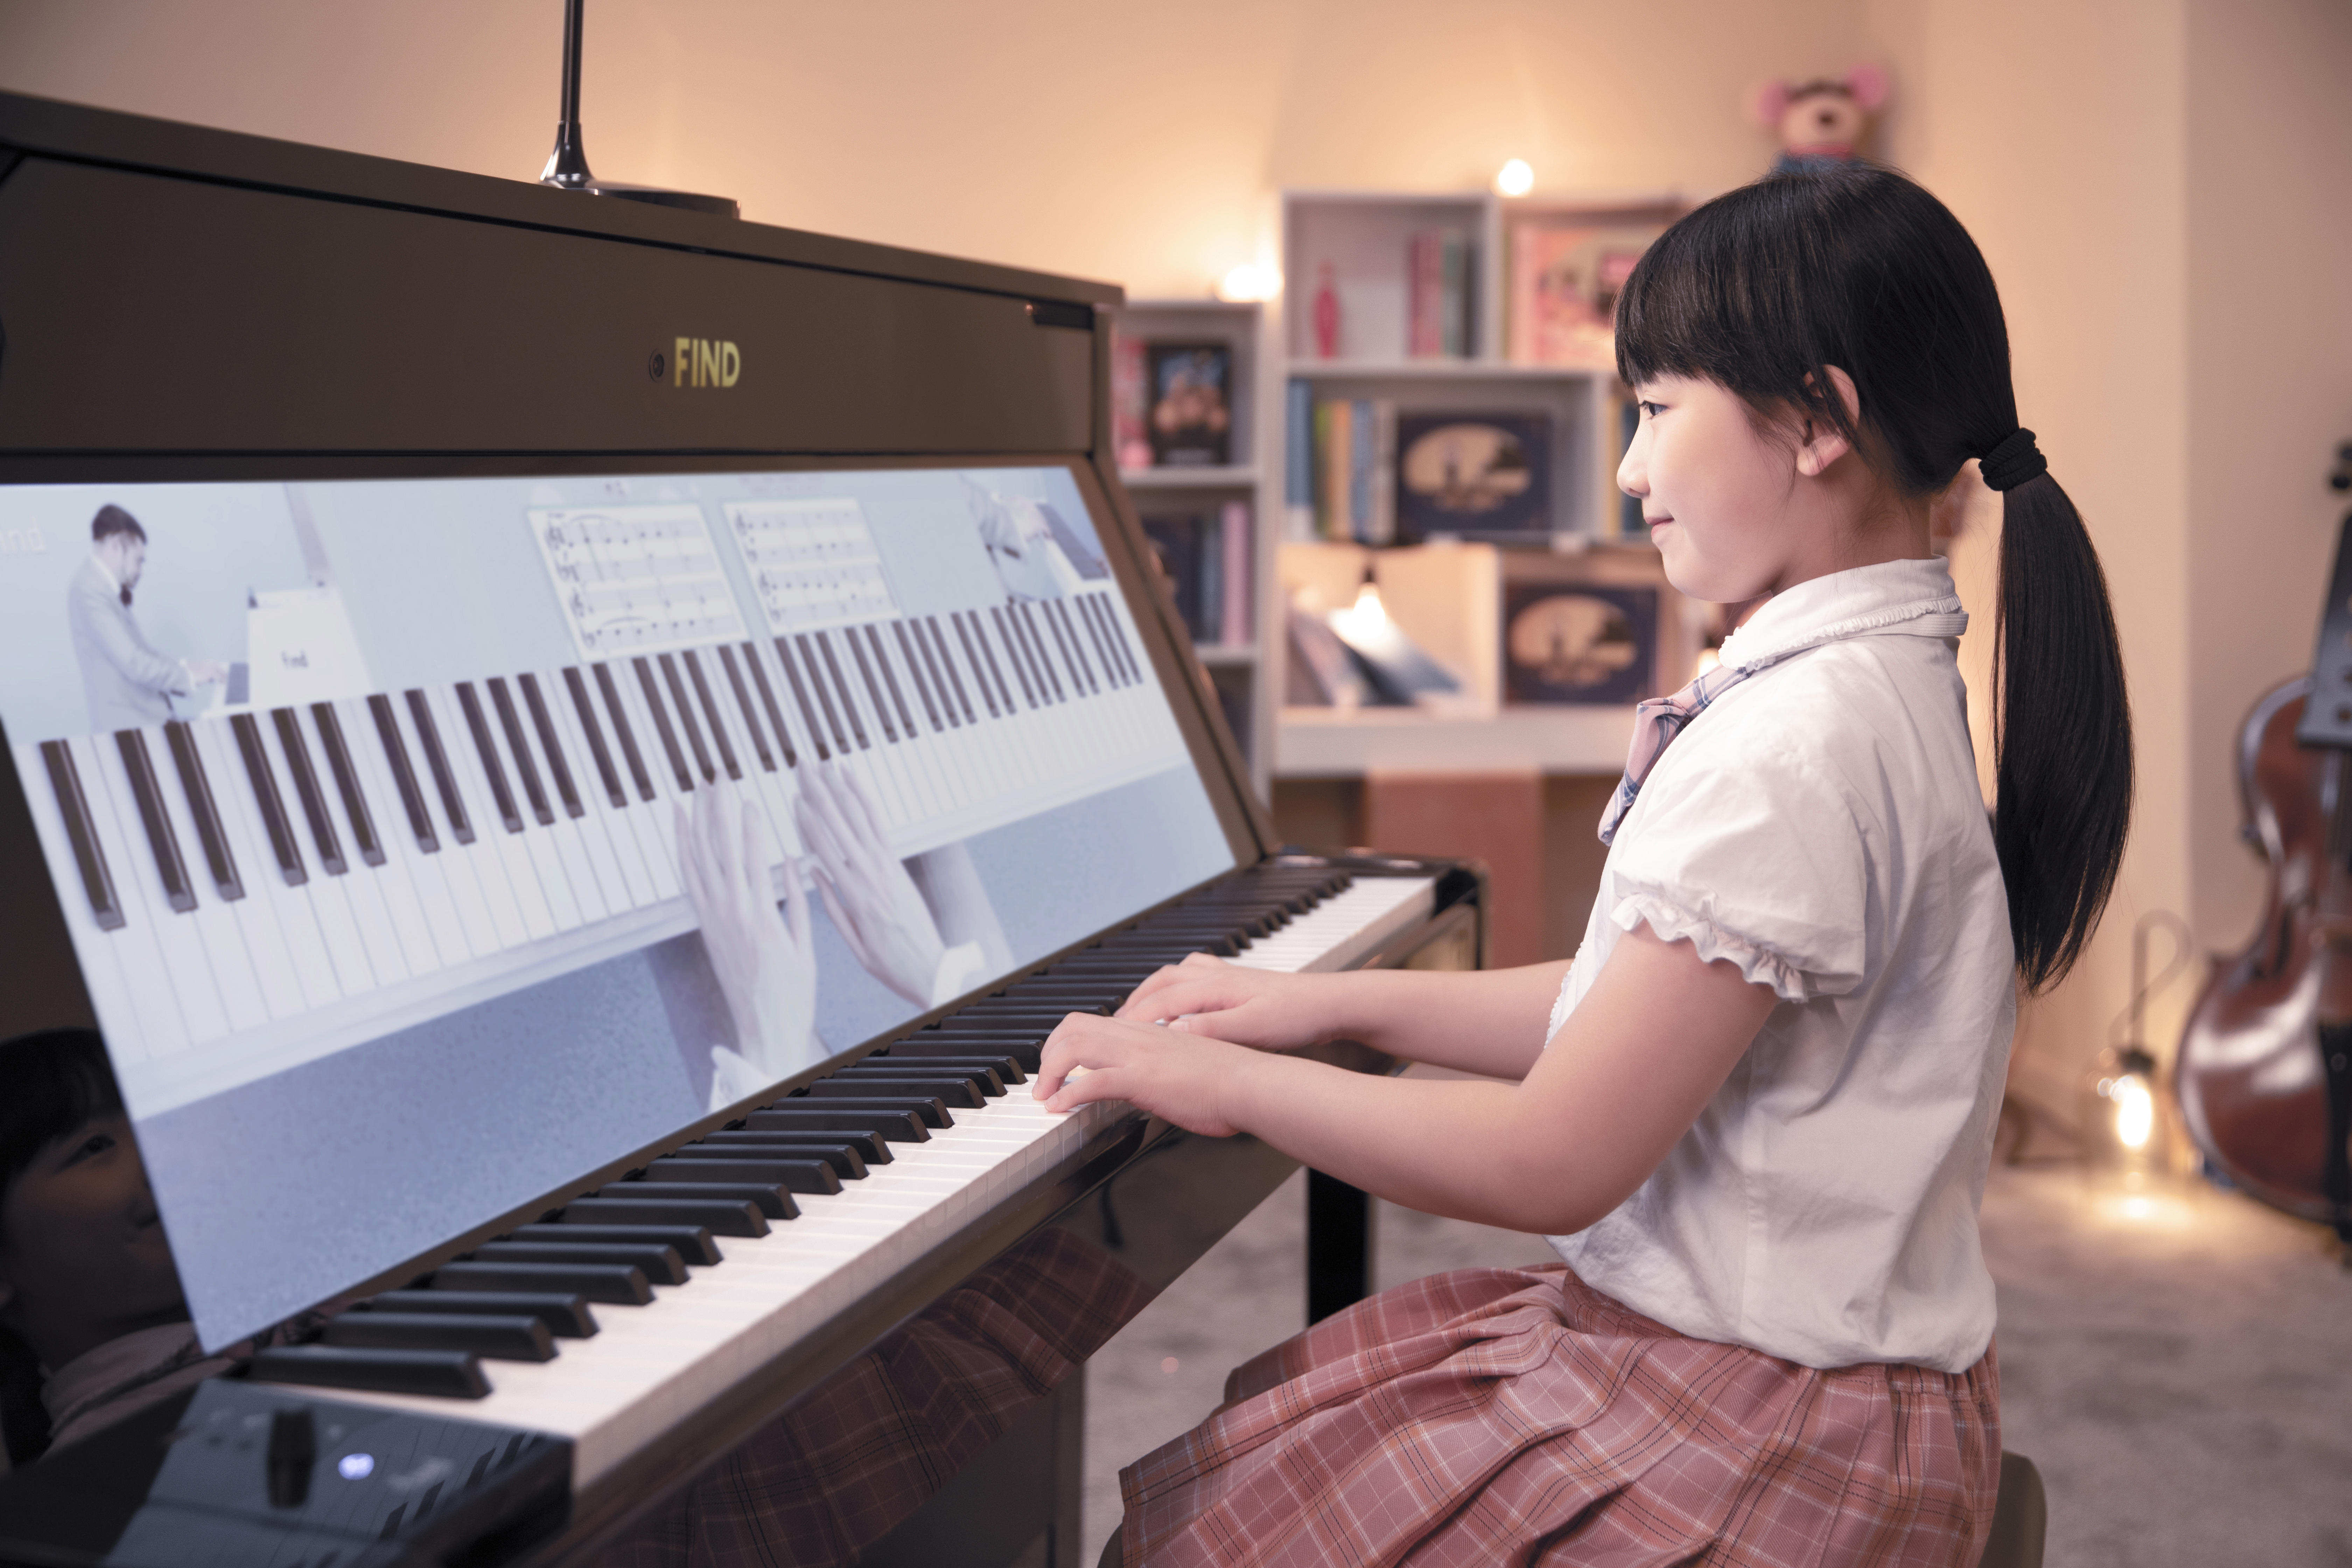 周杰伦家都在用的钢琴，「FIND智慧钢琴」希望以智慧硬件+音乐课程切入钢琴教育市场